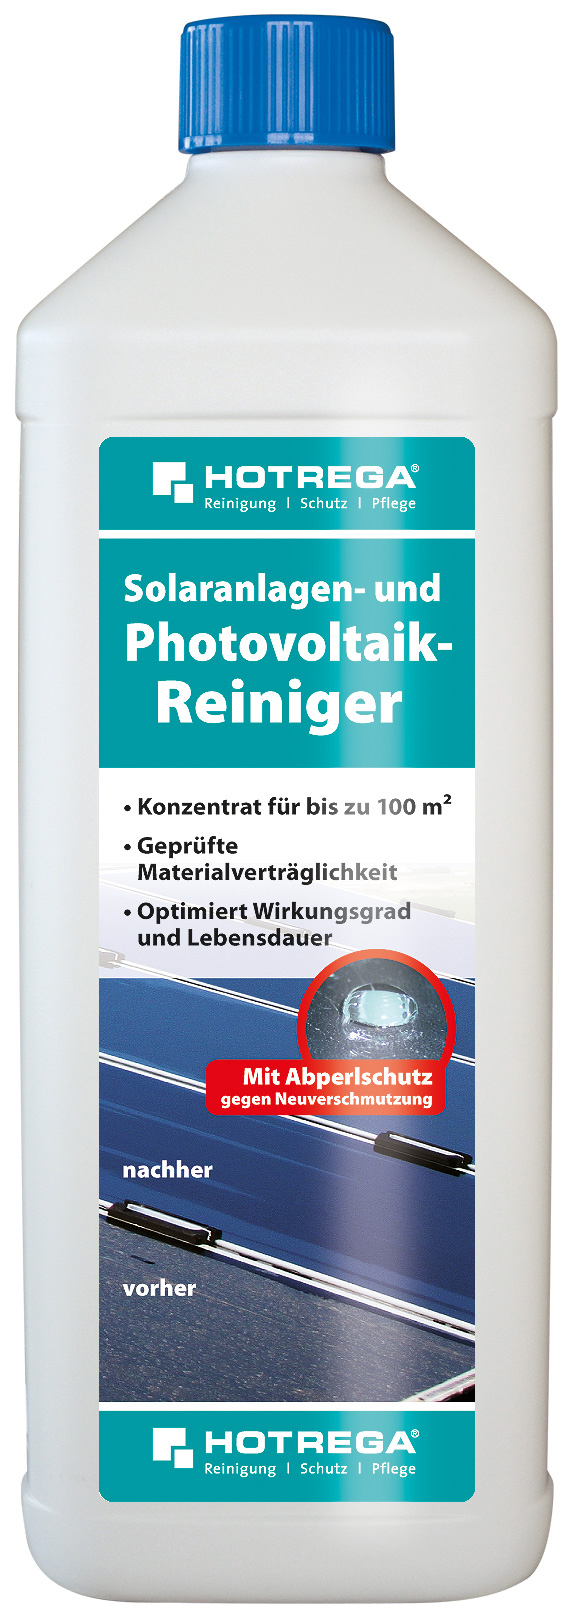 Photovoltaikanlagen Reiniger in 1 Liter Flasche (Konzentrat)